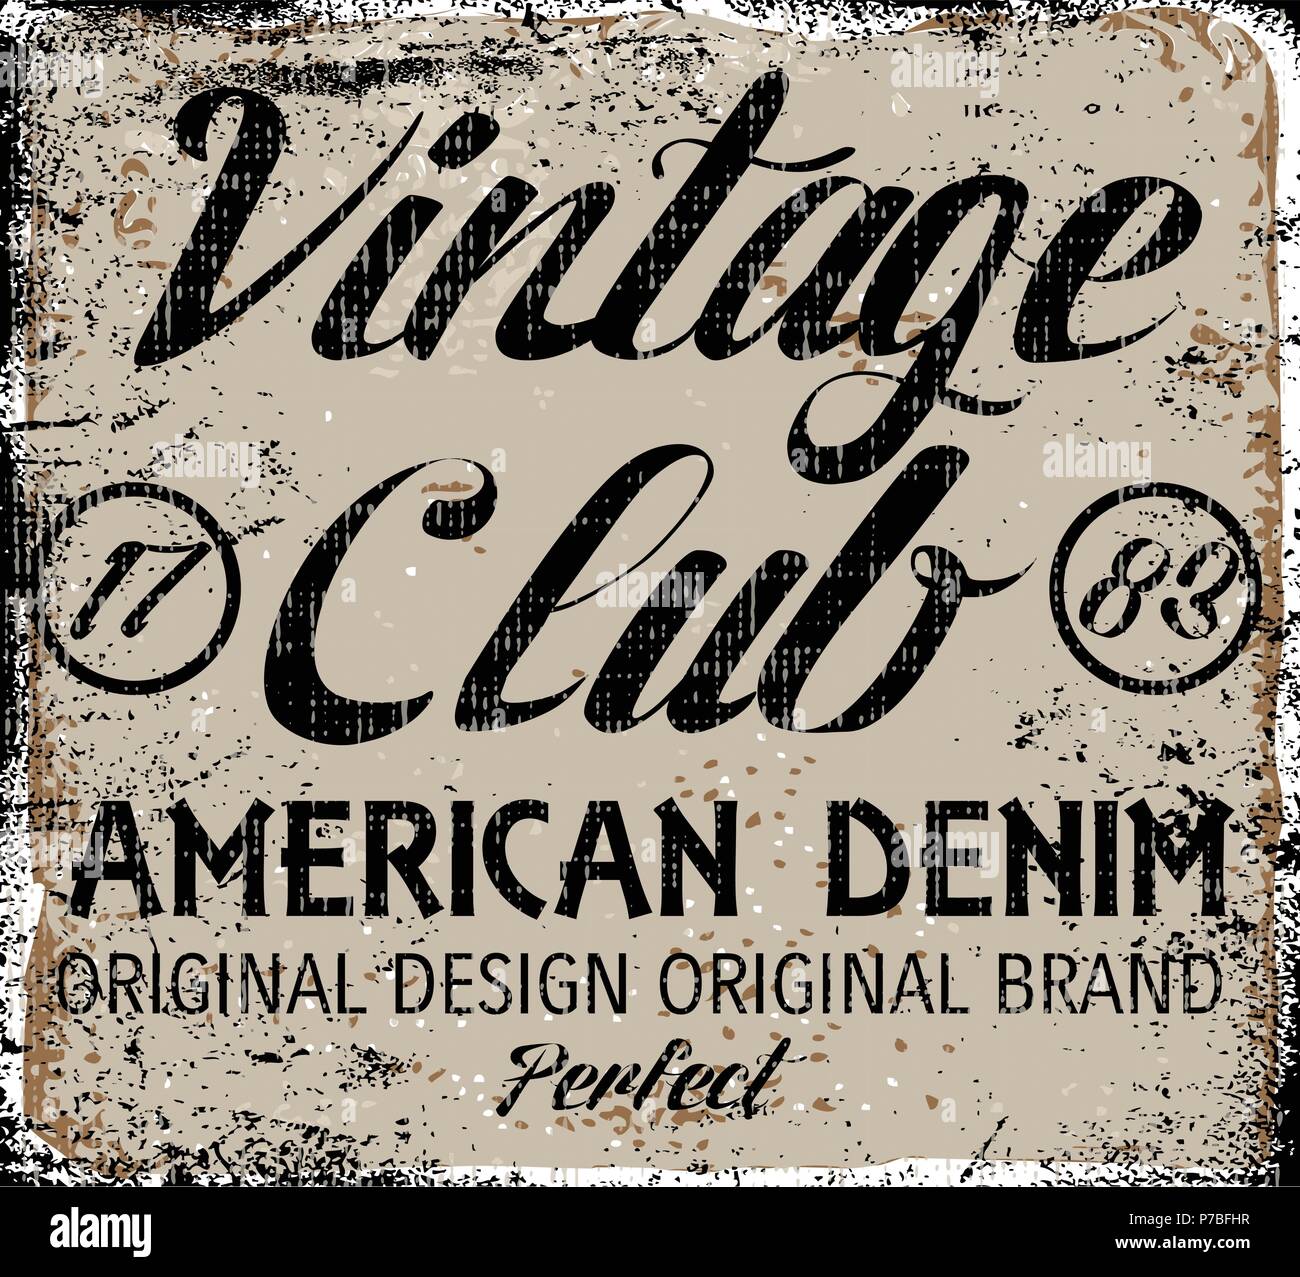 Vintage Design. Stempel Typografie, t-shirt, Grafiken, Poster, Banner,  Drucken, Flyer, Postkarte Stock-Vektorgrafik - Alamy